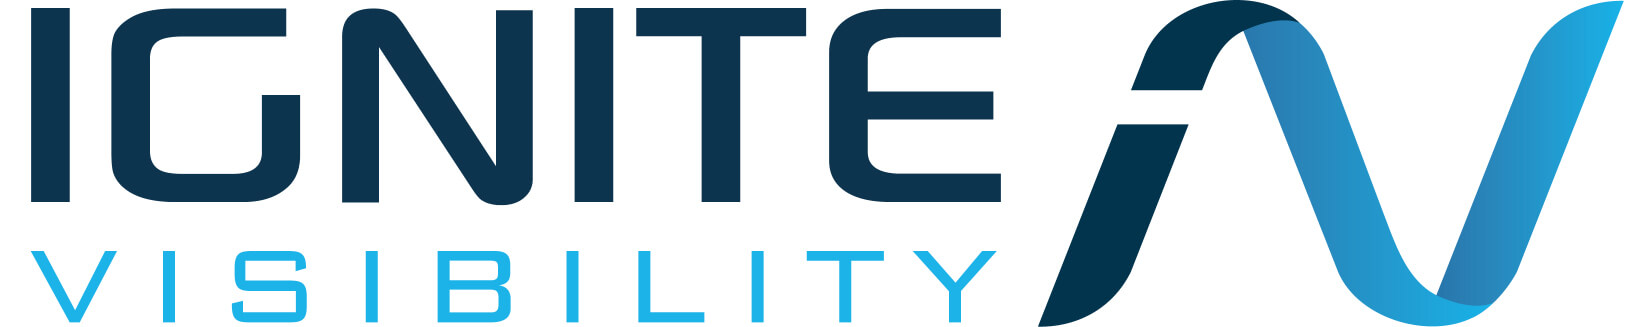 Top Corporate SEO Company Logo: Ignite Visibility